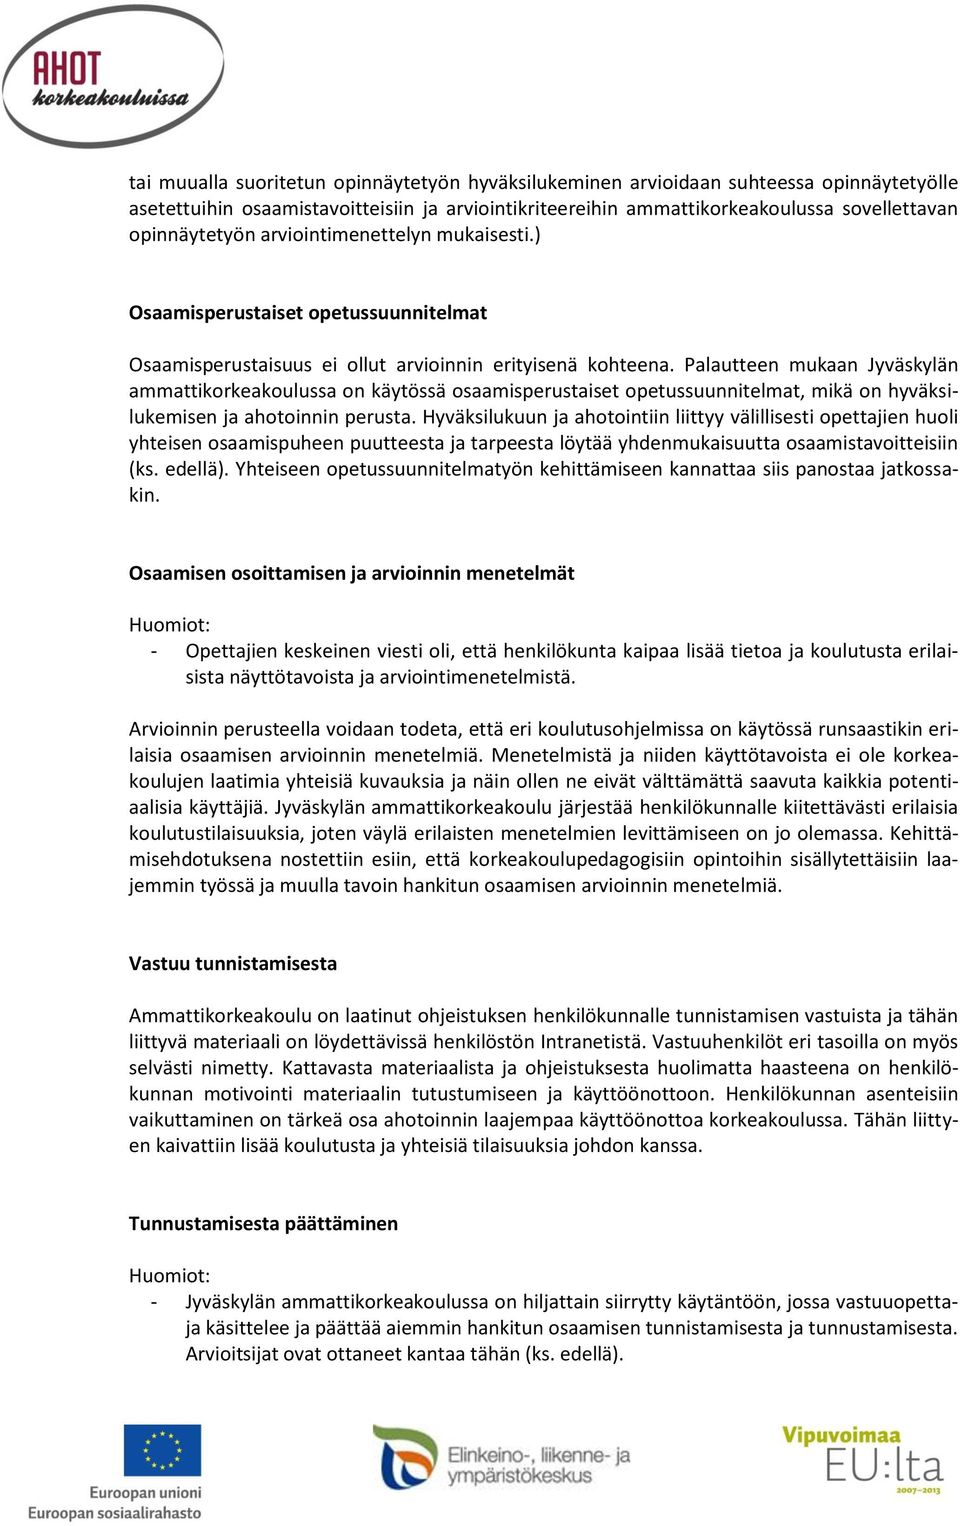 Palautteen mukaan Jyväskylän ammattikorkeakoulussa on käytössä osaamisperustaiset opetussuunnitelmat, mikä on hyväksilukemisen ja ahotoinnin perusta.